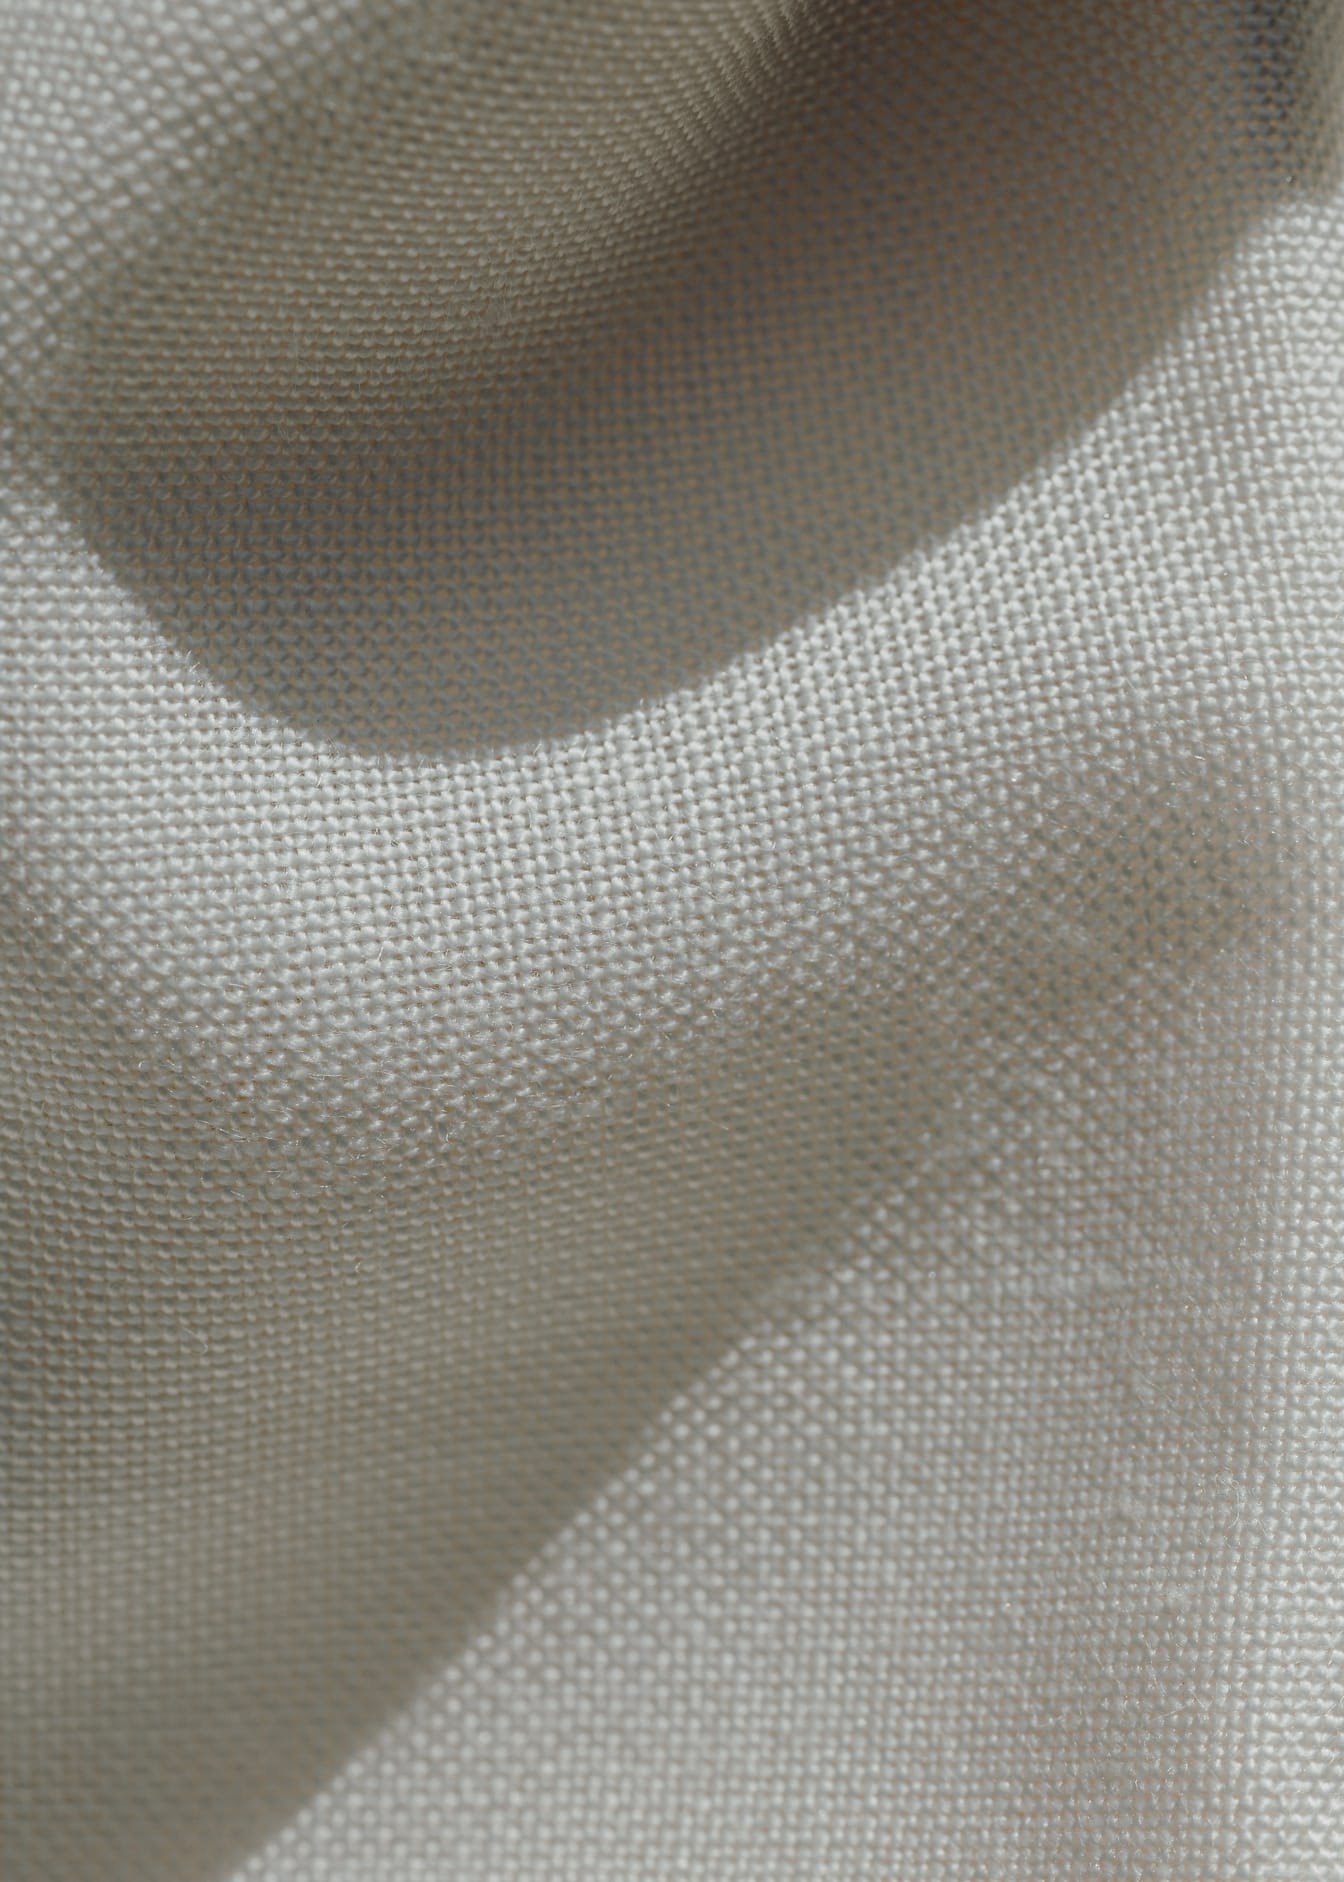 Zbliżenie na pogniecioną białą tkaninę lnianą z cieniami